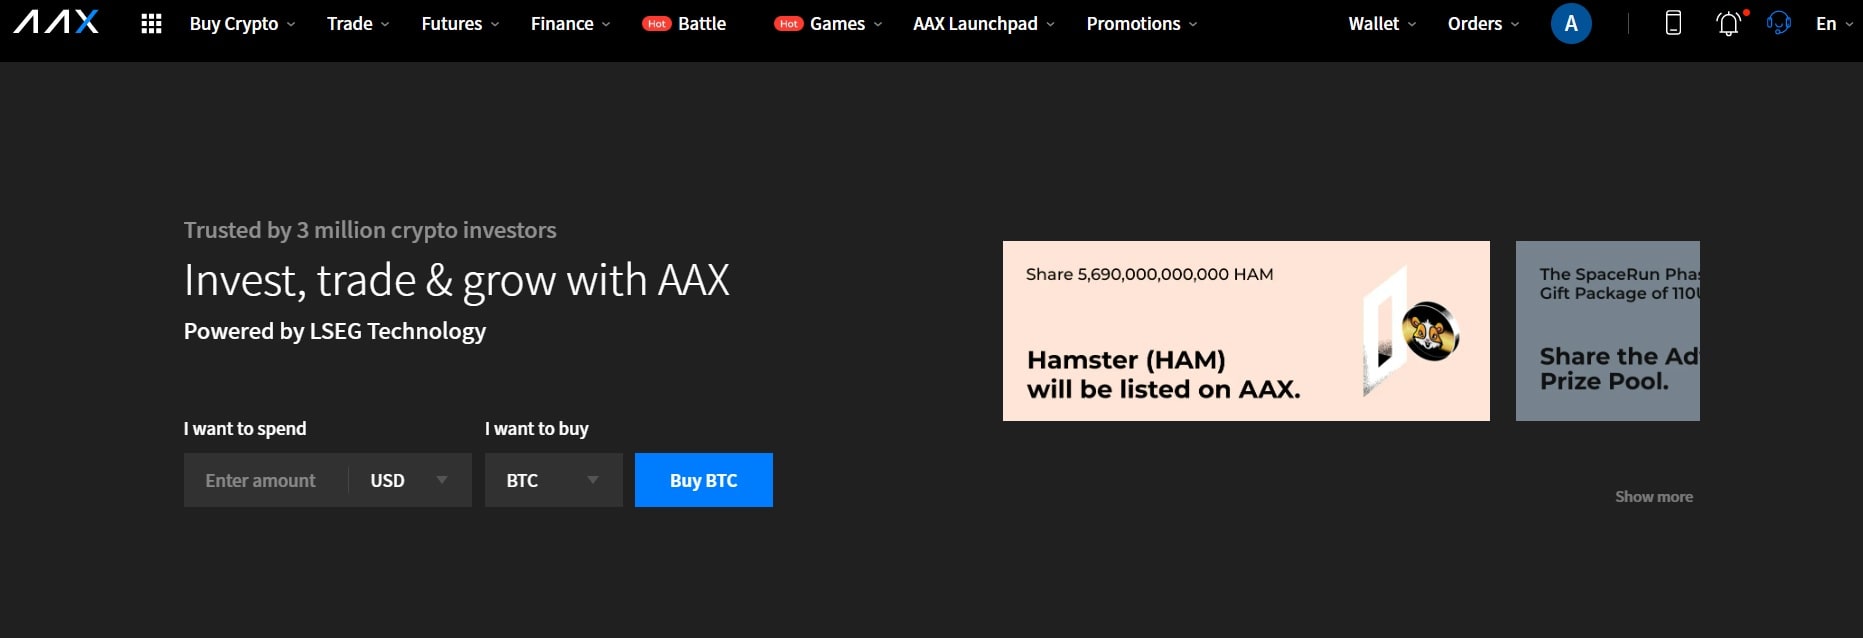 AAX website